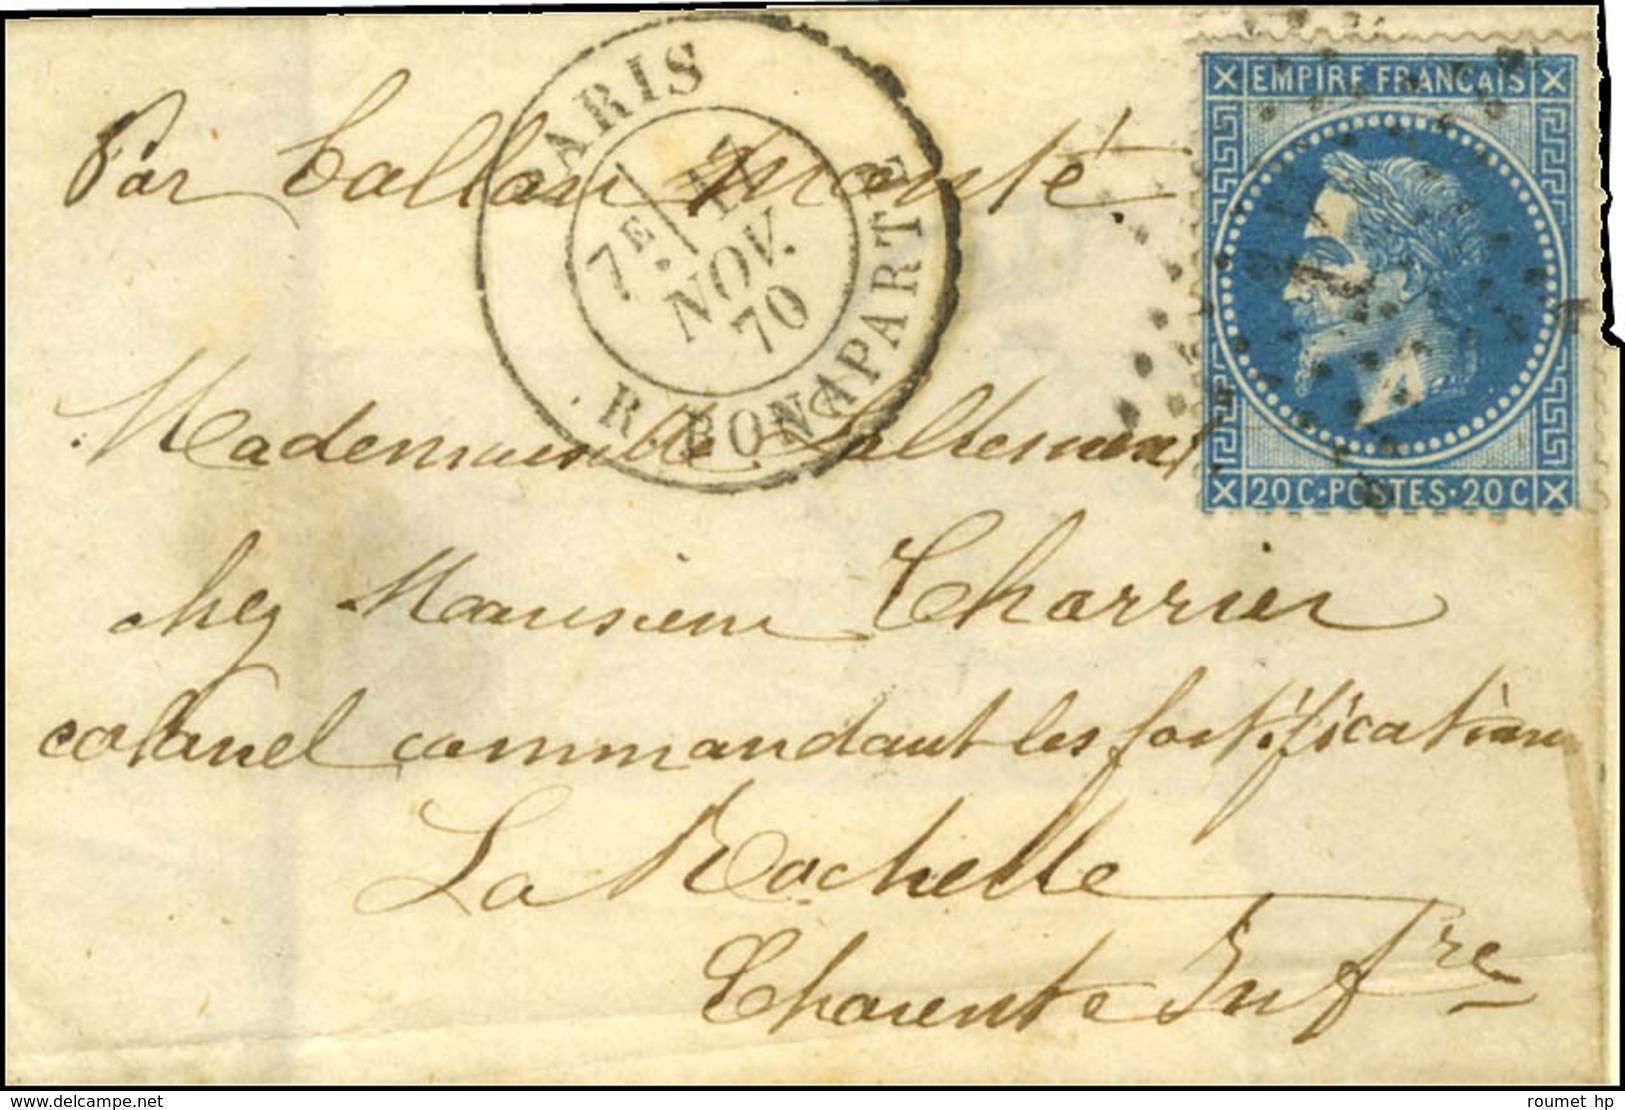 Etoile 15 / N° 29) Càd PARIS / R. BONAPARTE 17 NOV. 70 Sur Lettre Sans Texte Adressée Au Colonel Commandant Les Fortific - War 1870